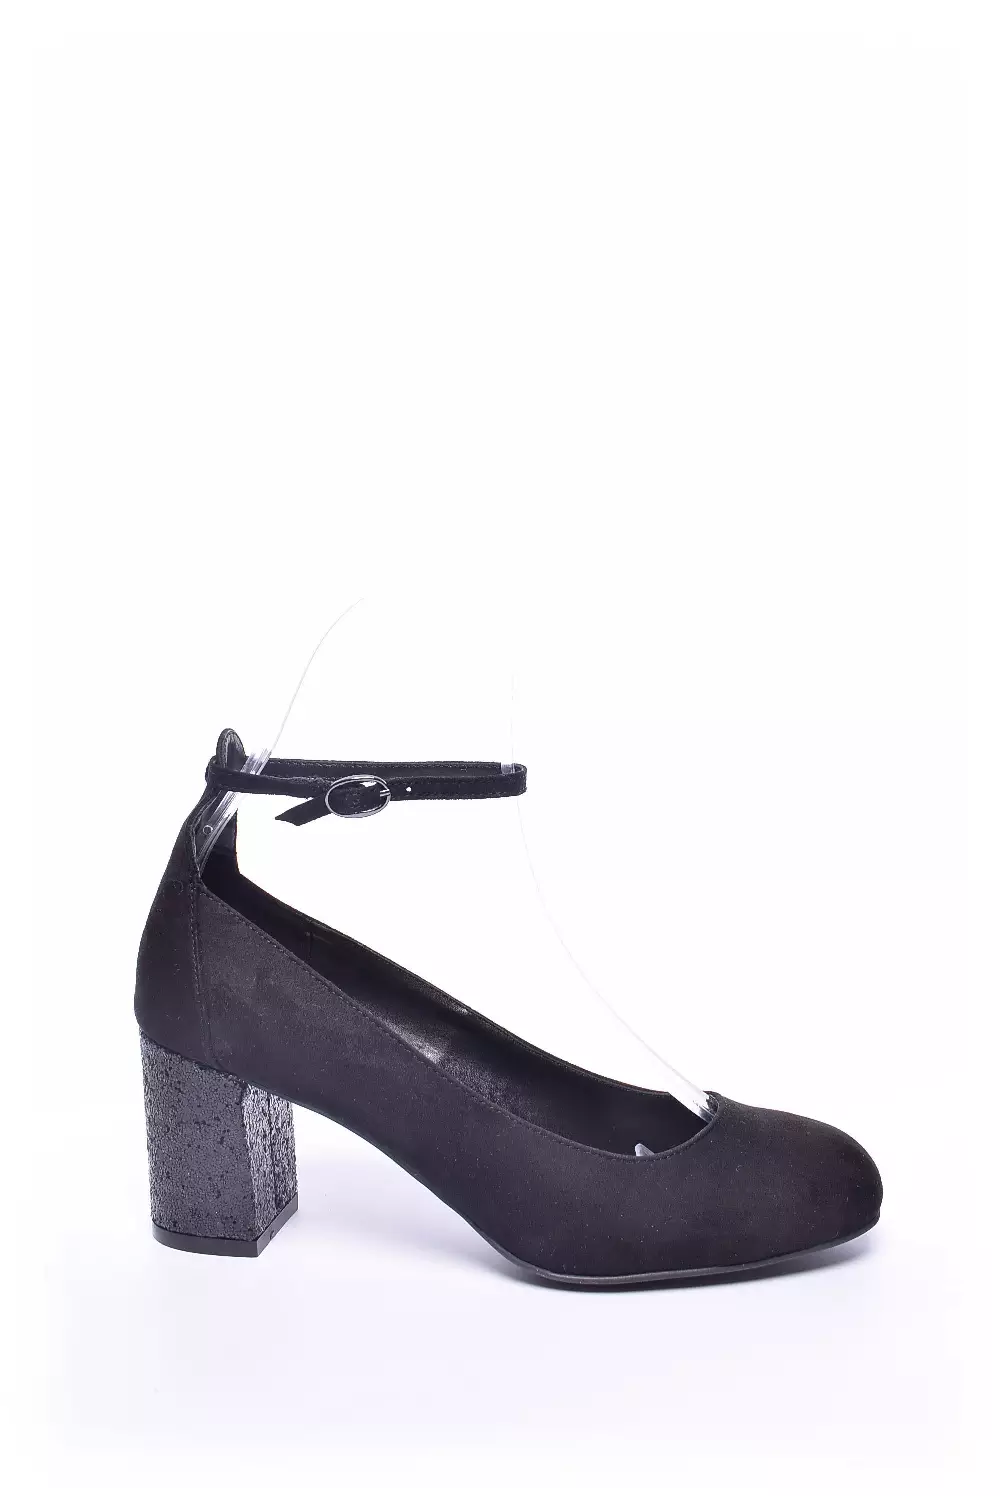 Pantofi dama  [1]